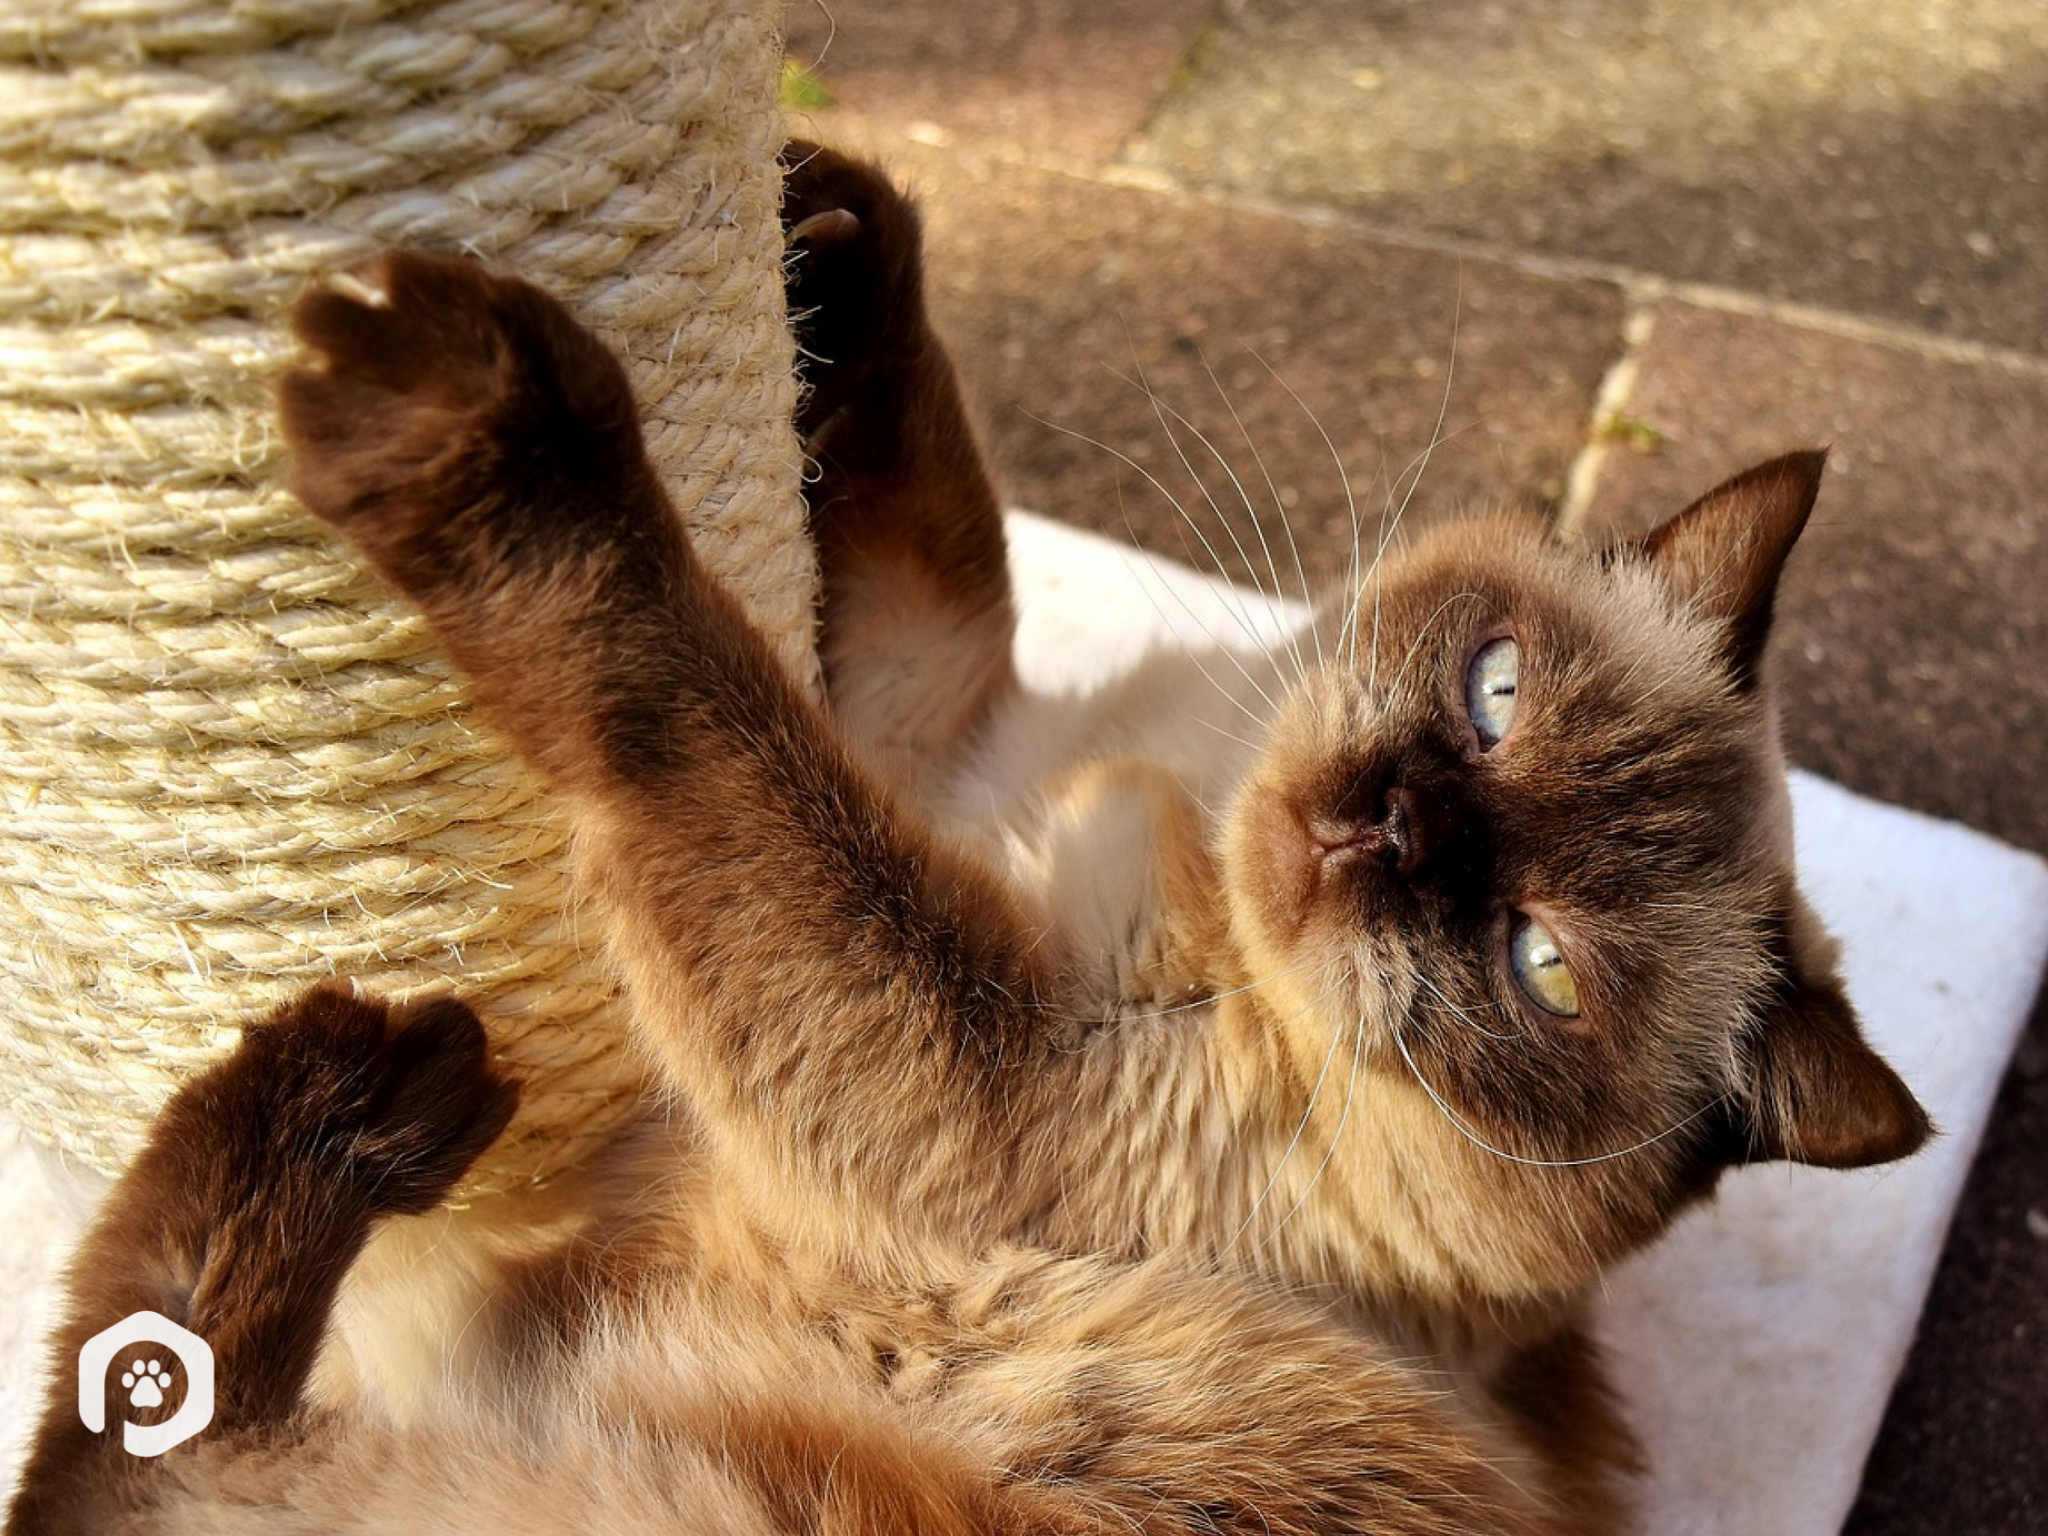 Como deixar seu gatinho mais calmo em casa: 10 dicas infalíveis